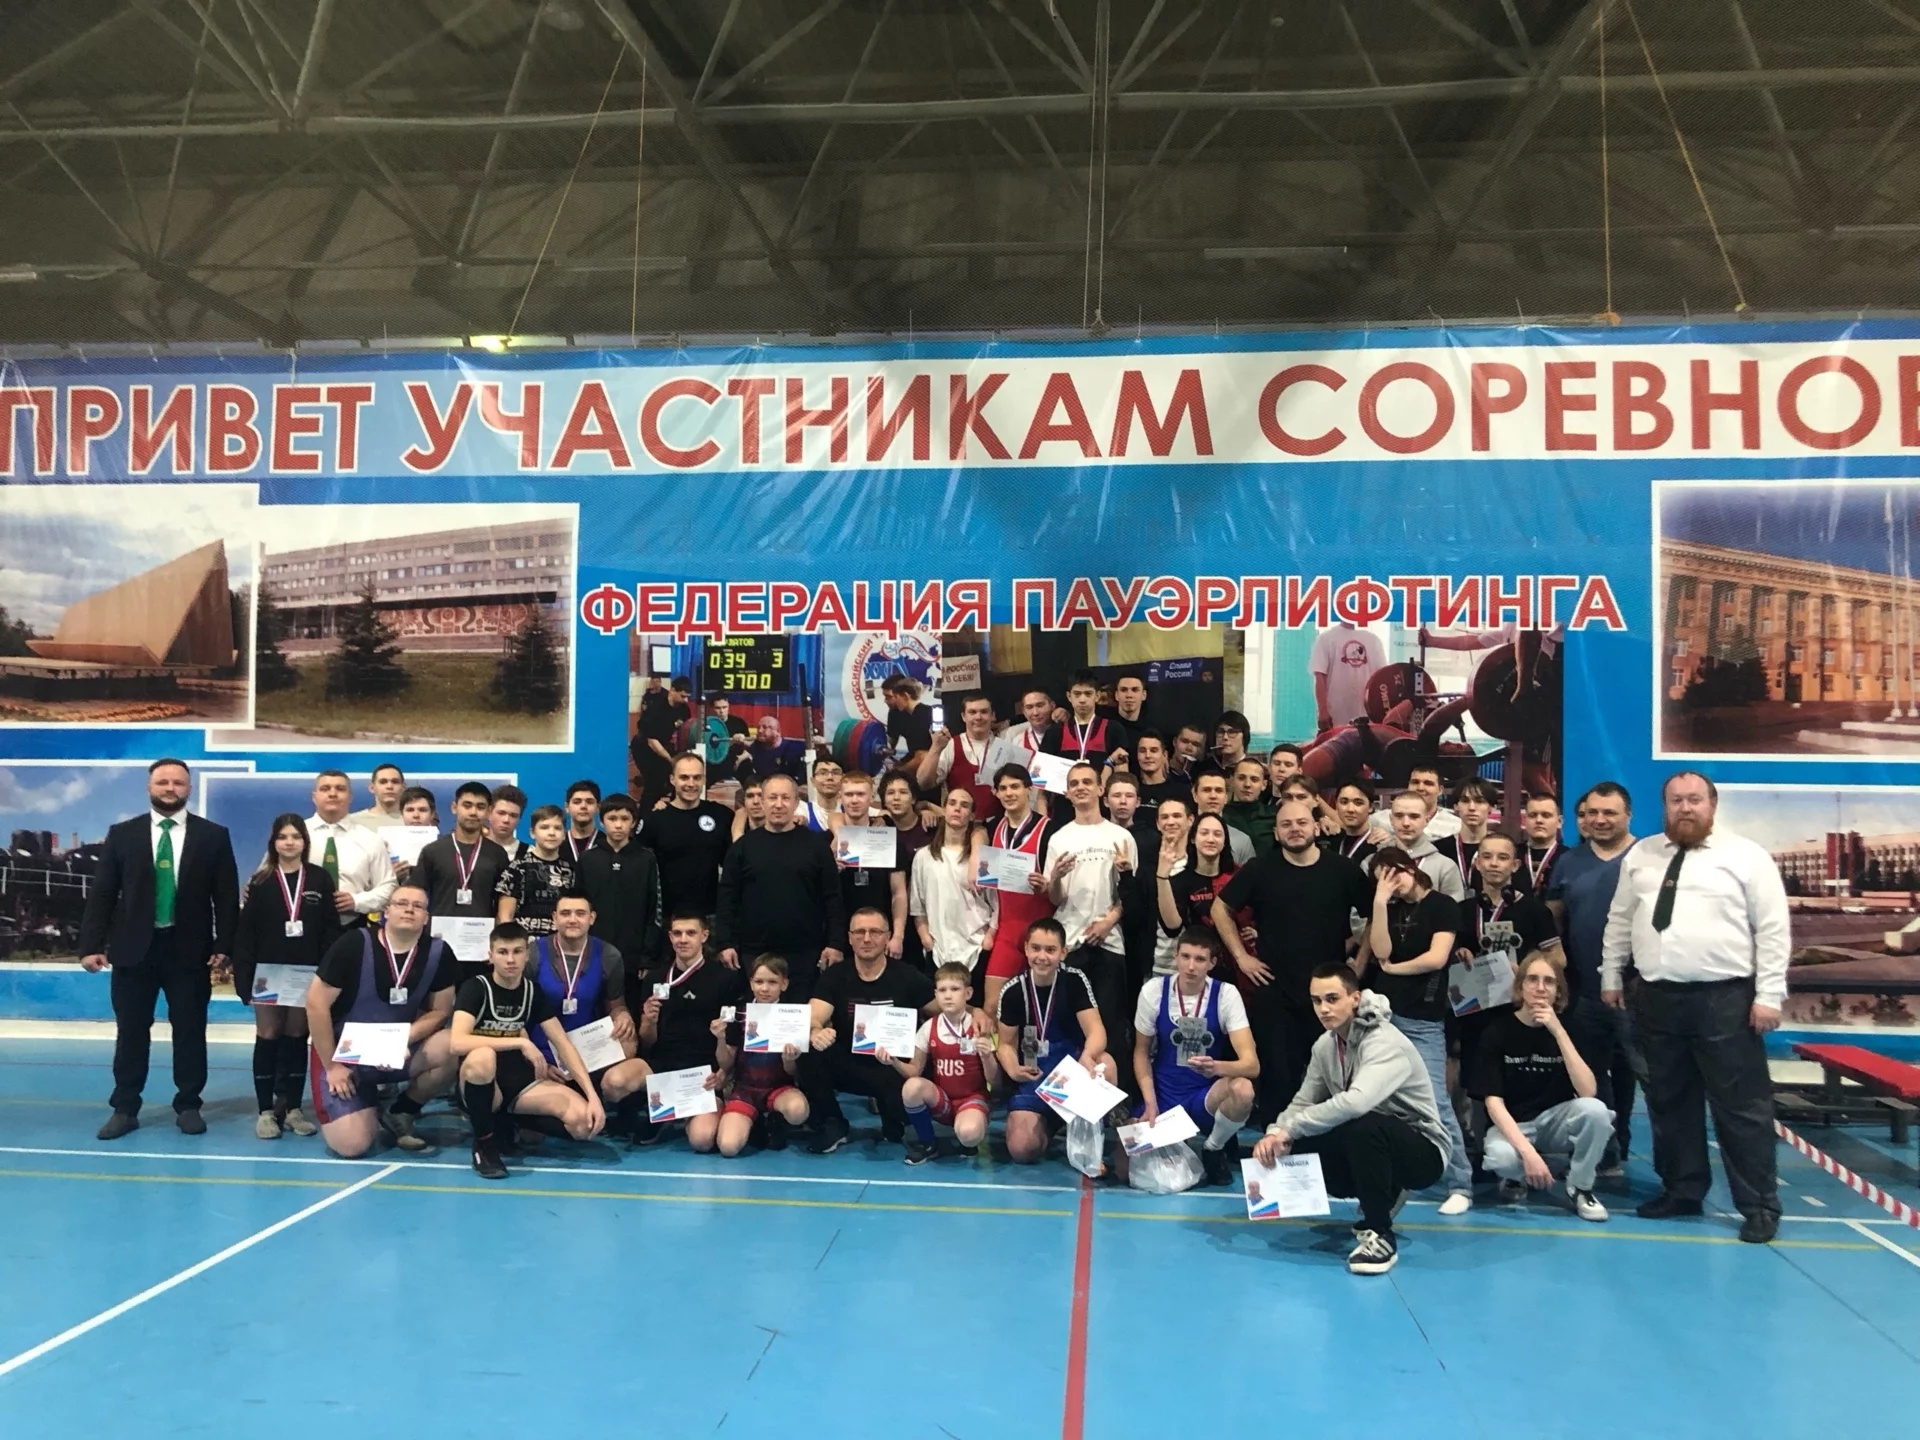 Спортсмены из Миасса показали блестящие результаты в первенстве Челябинской области по пауэрлифтнгу